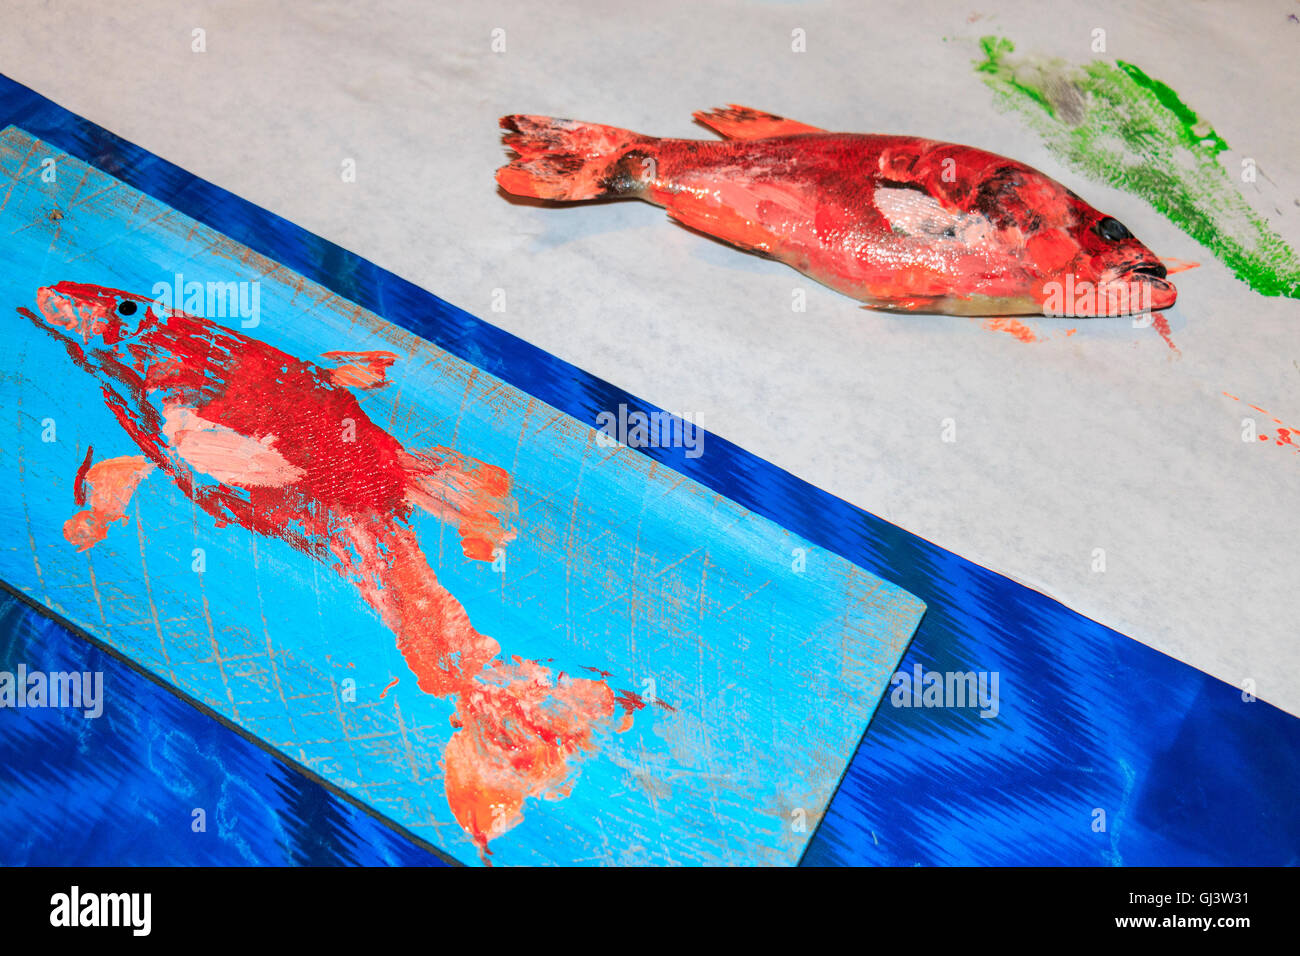 Peinture de poissons au désir des Arts dans la région de Lake Charles. Vous peignez le poisson, puis transférer l'image (un peu comme un pochoir) sur papier, Banque D'Images